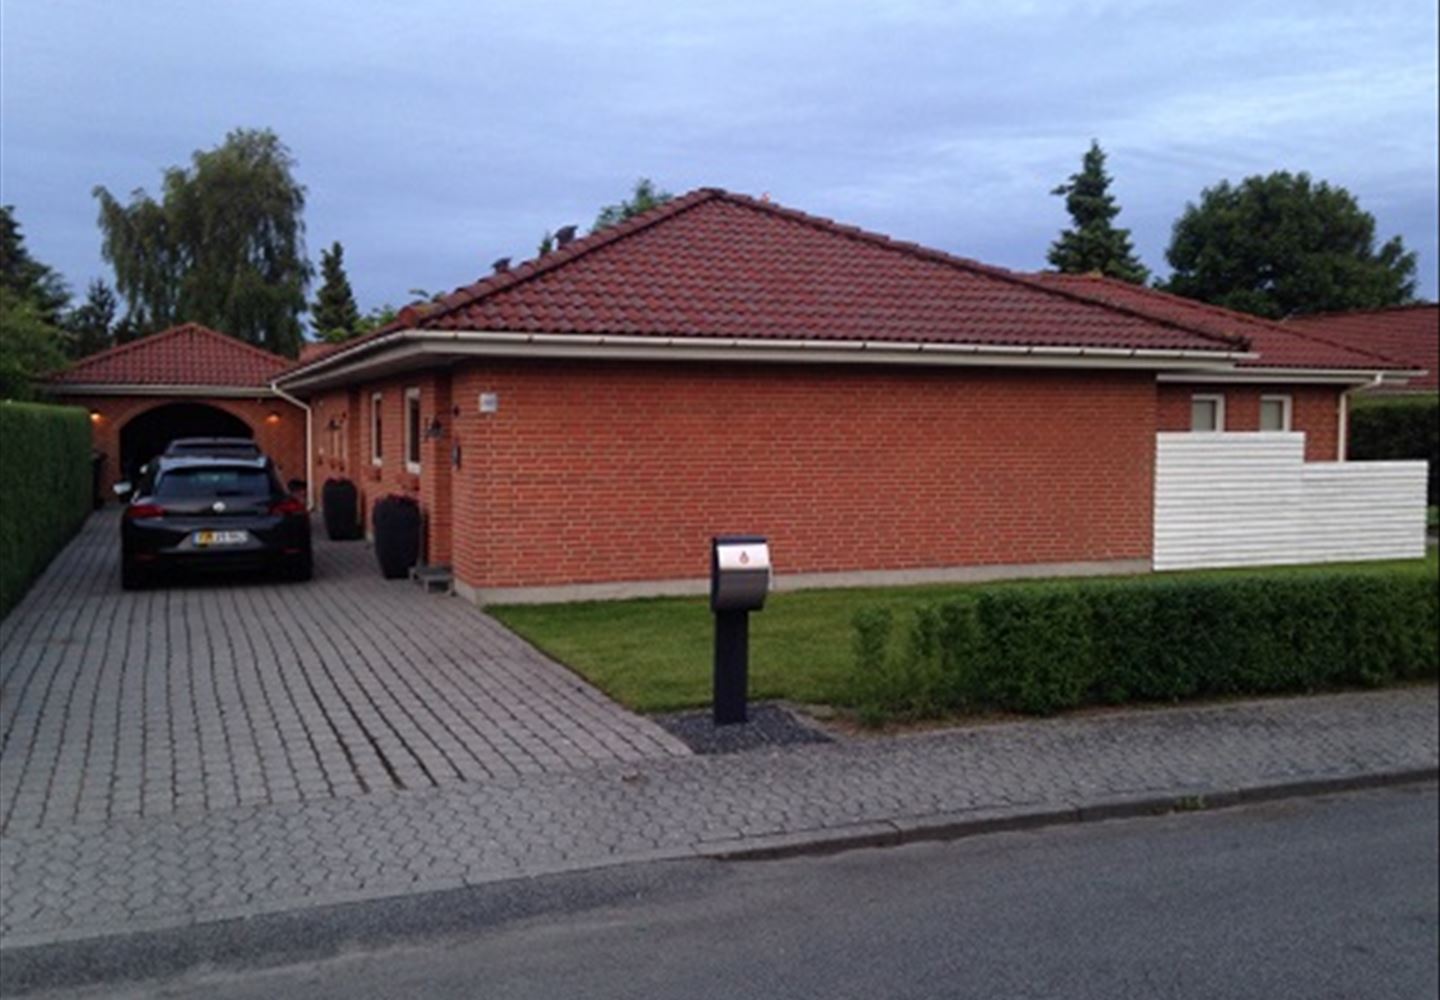 Søndre Boulevard 285, 7200 Grindsted